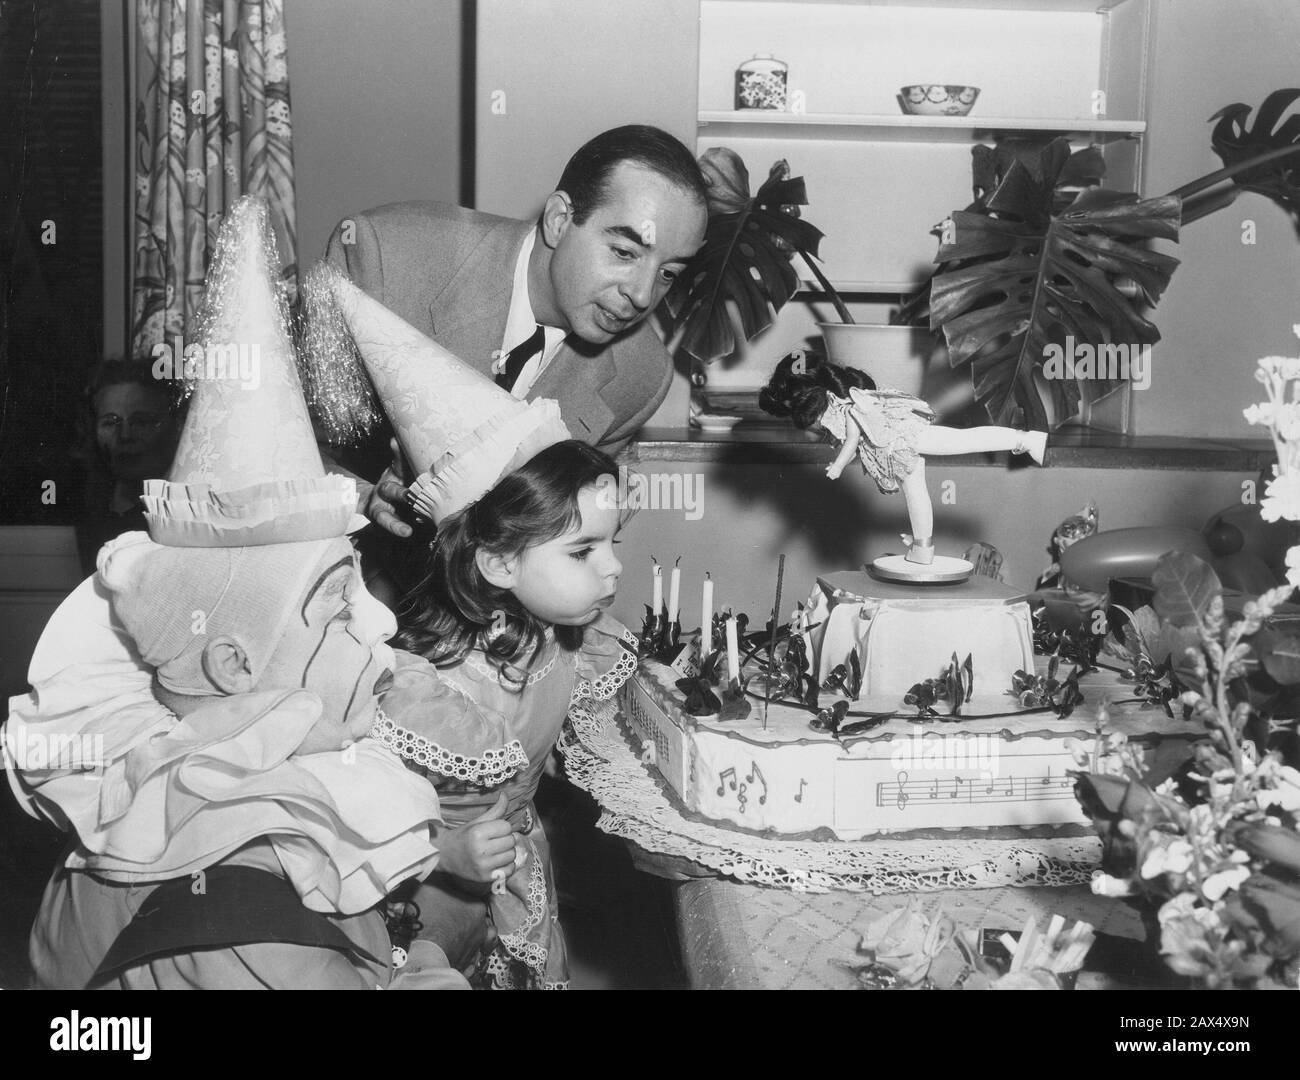 1950 , Hollywood , USA : LIZA MINNELLI ( nato 16 marzo 1946 , Los Angeles , USA ) 4th festa di compleanno in casa con suo padre , il celebre regista VINCENTE MINNELLI ( 1903 - 1986 ) - FILM - CINEMA - attrice - cantante - registrazione filmato - festa di compleanno - pagliaccio - clown - torta - torta - torta - Personalità con i figli - a famiglia - Personalità famiglia - Personalty When was Young child - Personalità celebrità da giovani bambini - celebrità - celebrità - personaggi famosi ---- Archivio GBB Foto Stock